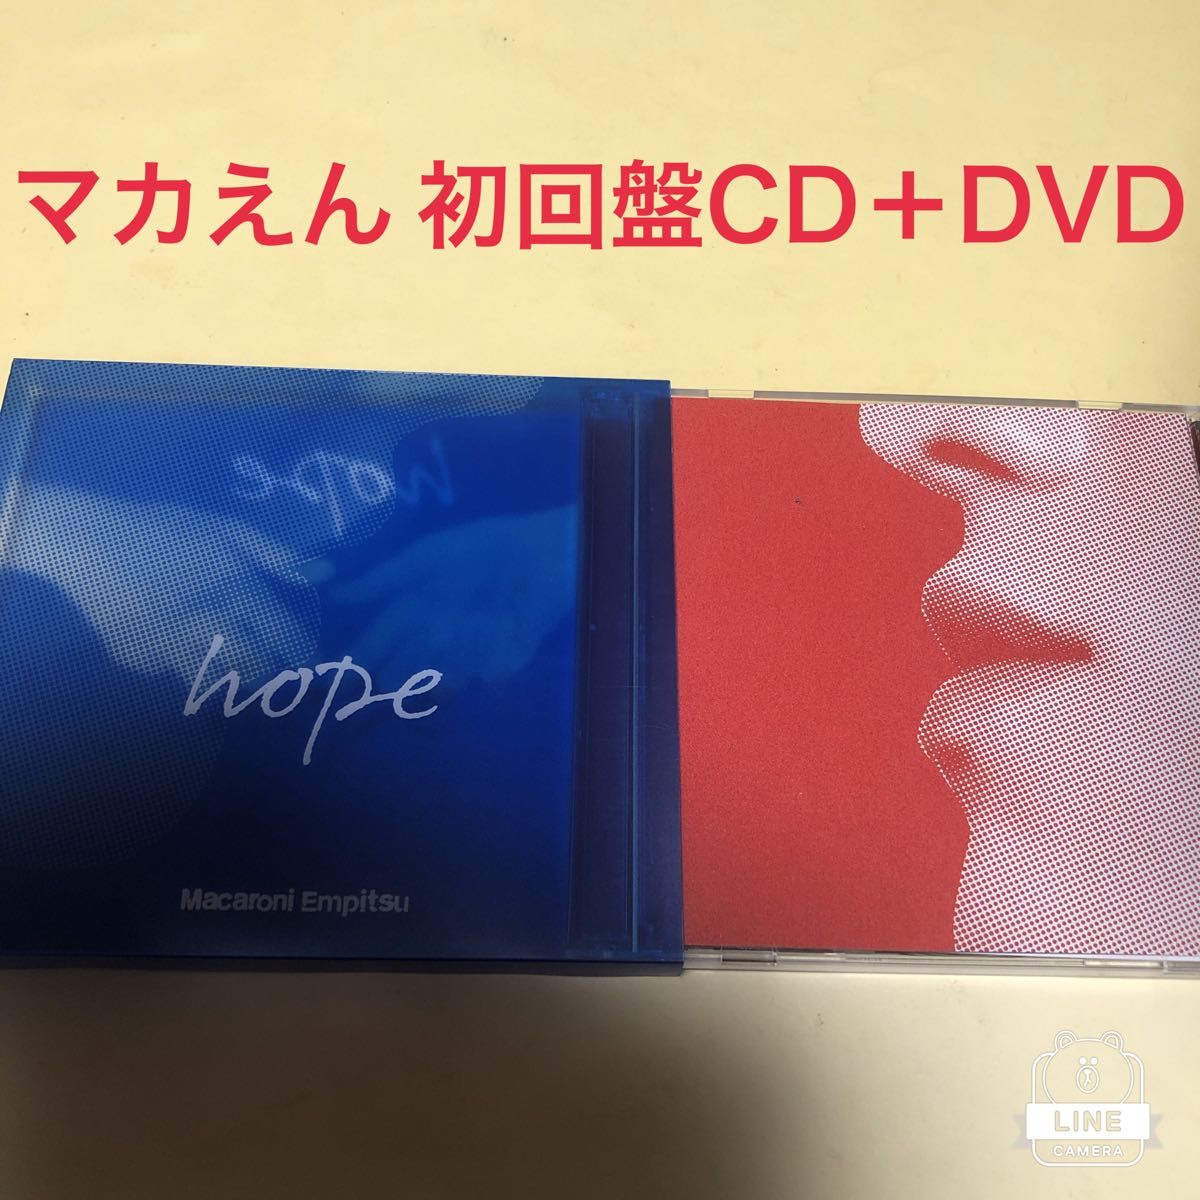 【初回盤】hope / マカロニえんぴつ